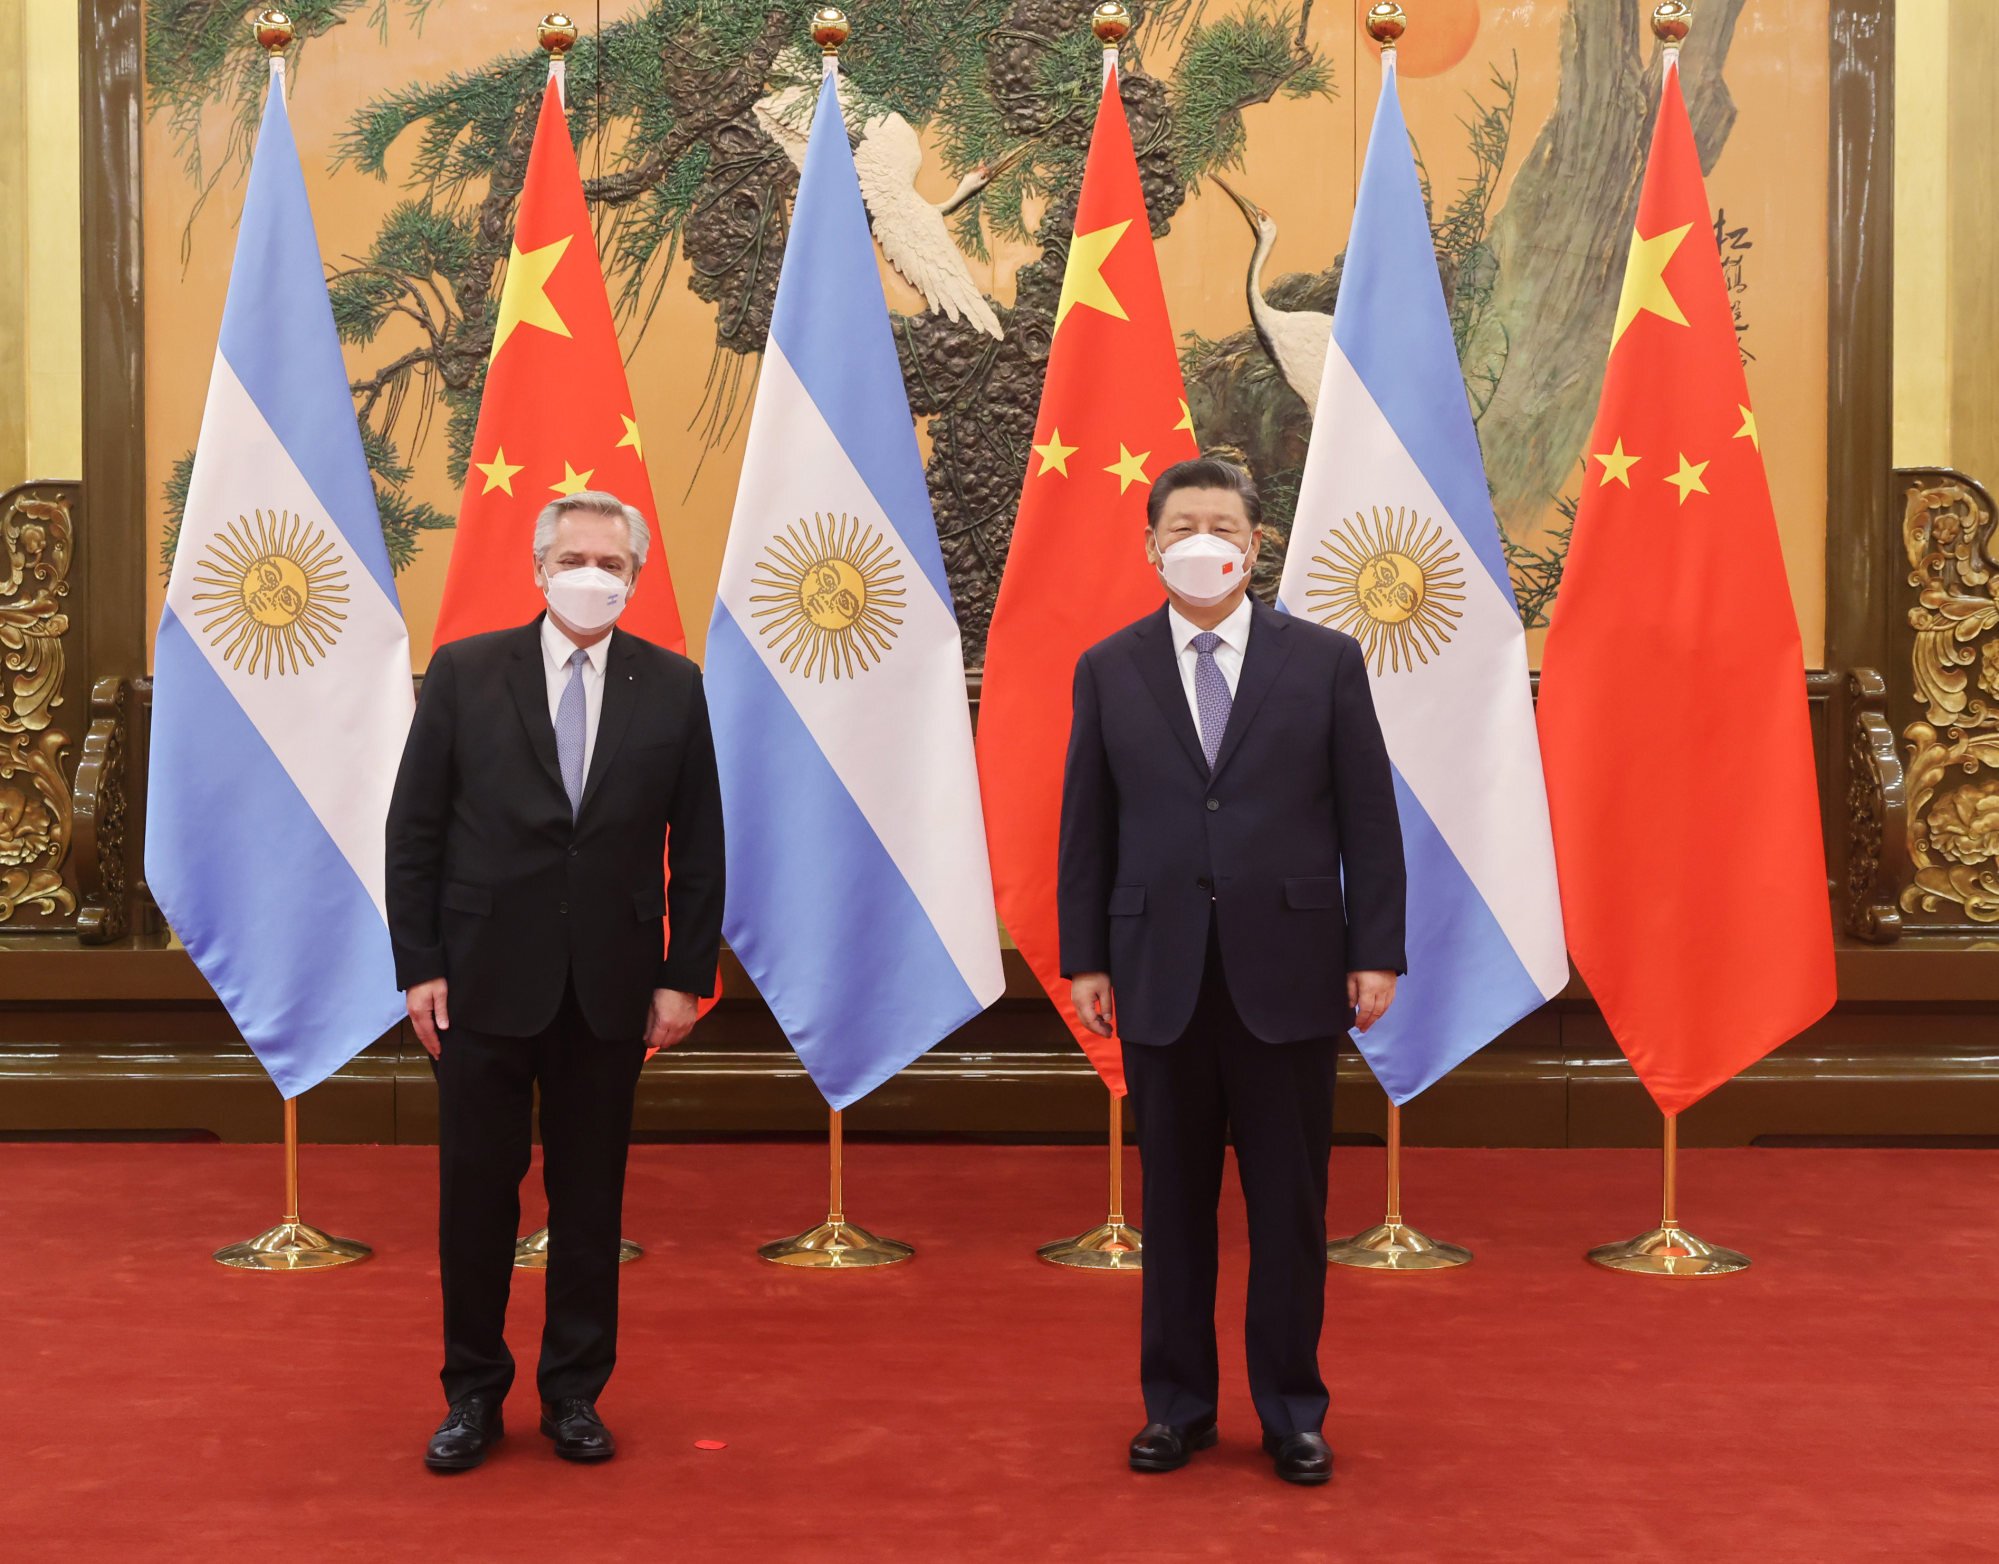 Argentina và Trung Quốc đã có những mối quan hệ ngoại giao mạnh mẽ trong những năm gần đây. Hãy đến và xem hình ảnh về cảnh tượng hợp tác này trên trang web của chúng tôi để có thể cập nhật trạng thái mới nhất về quan hệ giữa hai quốc gia này.